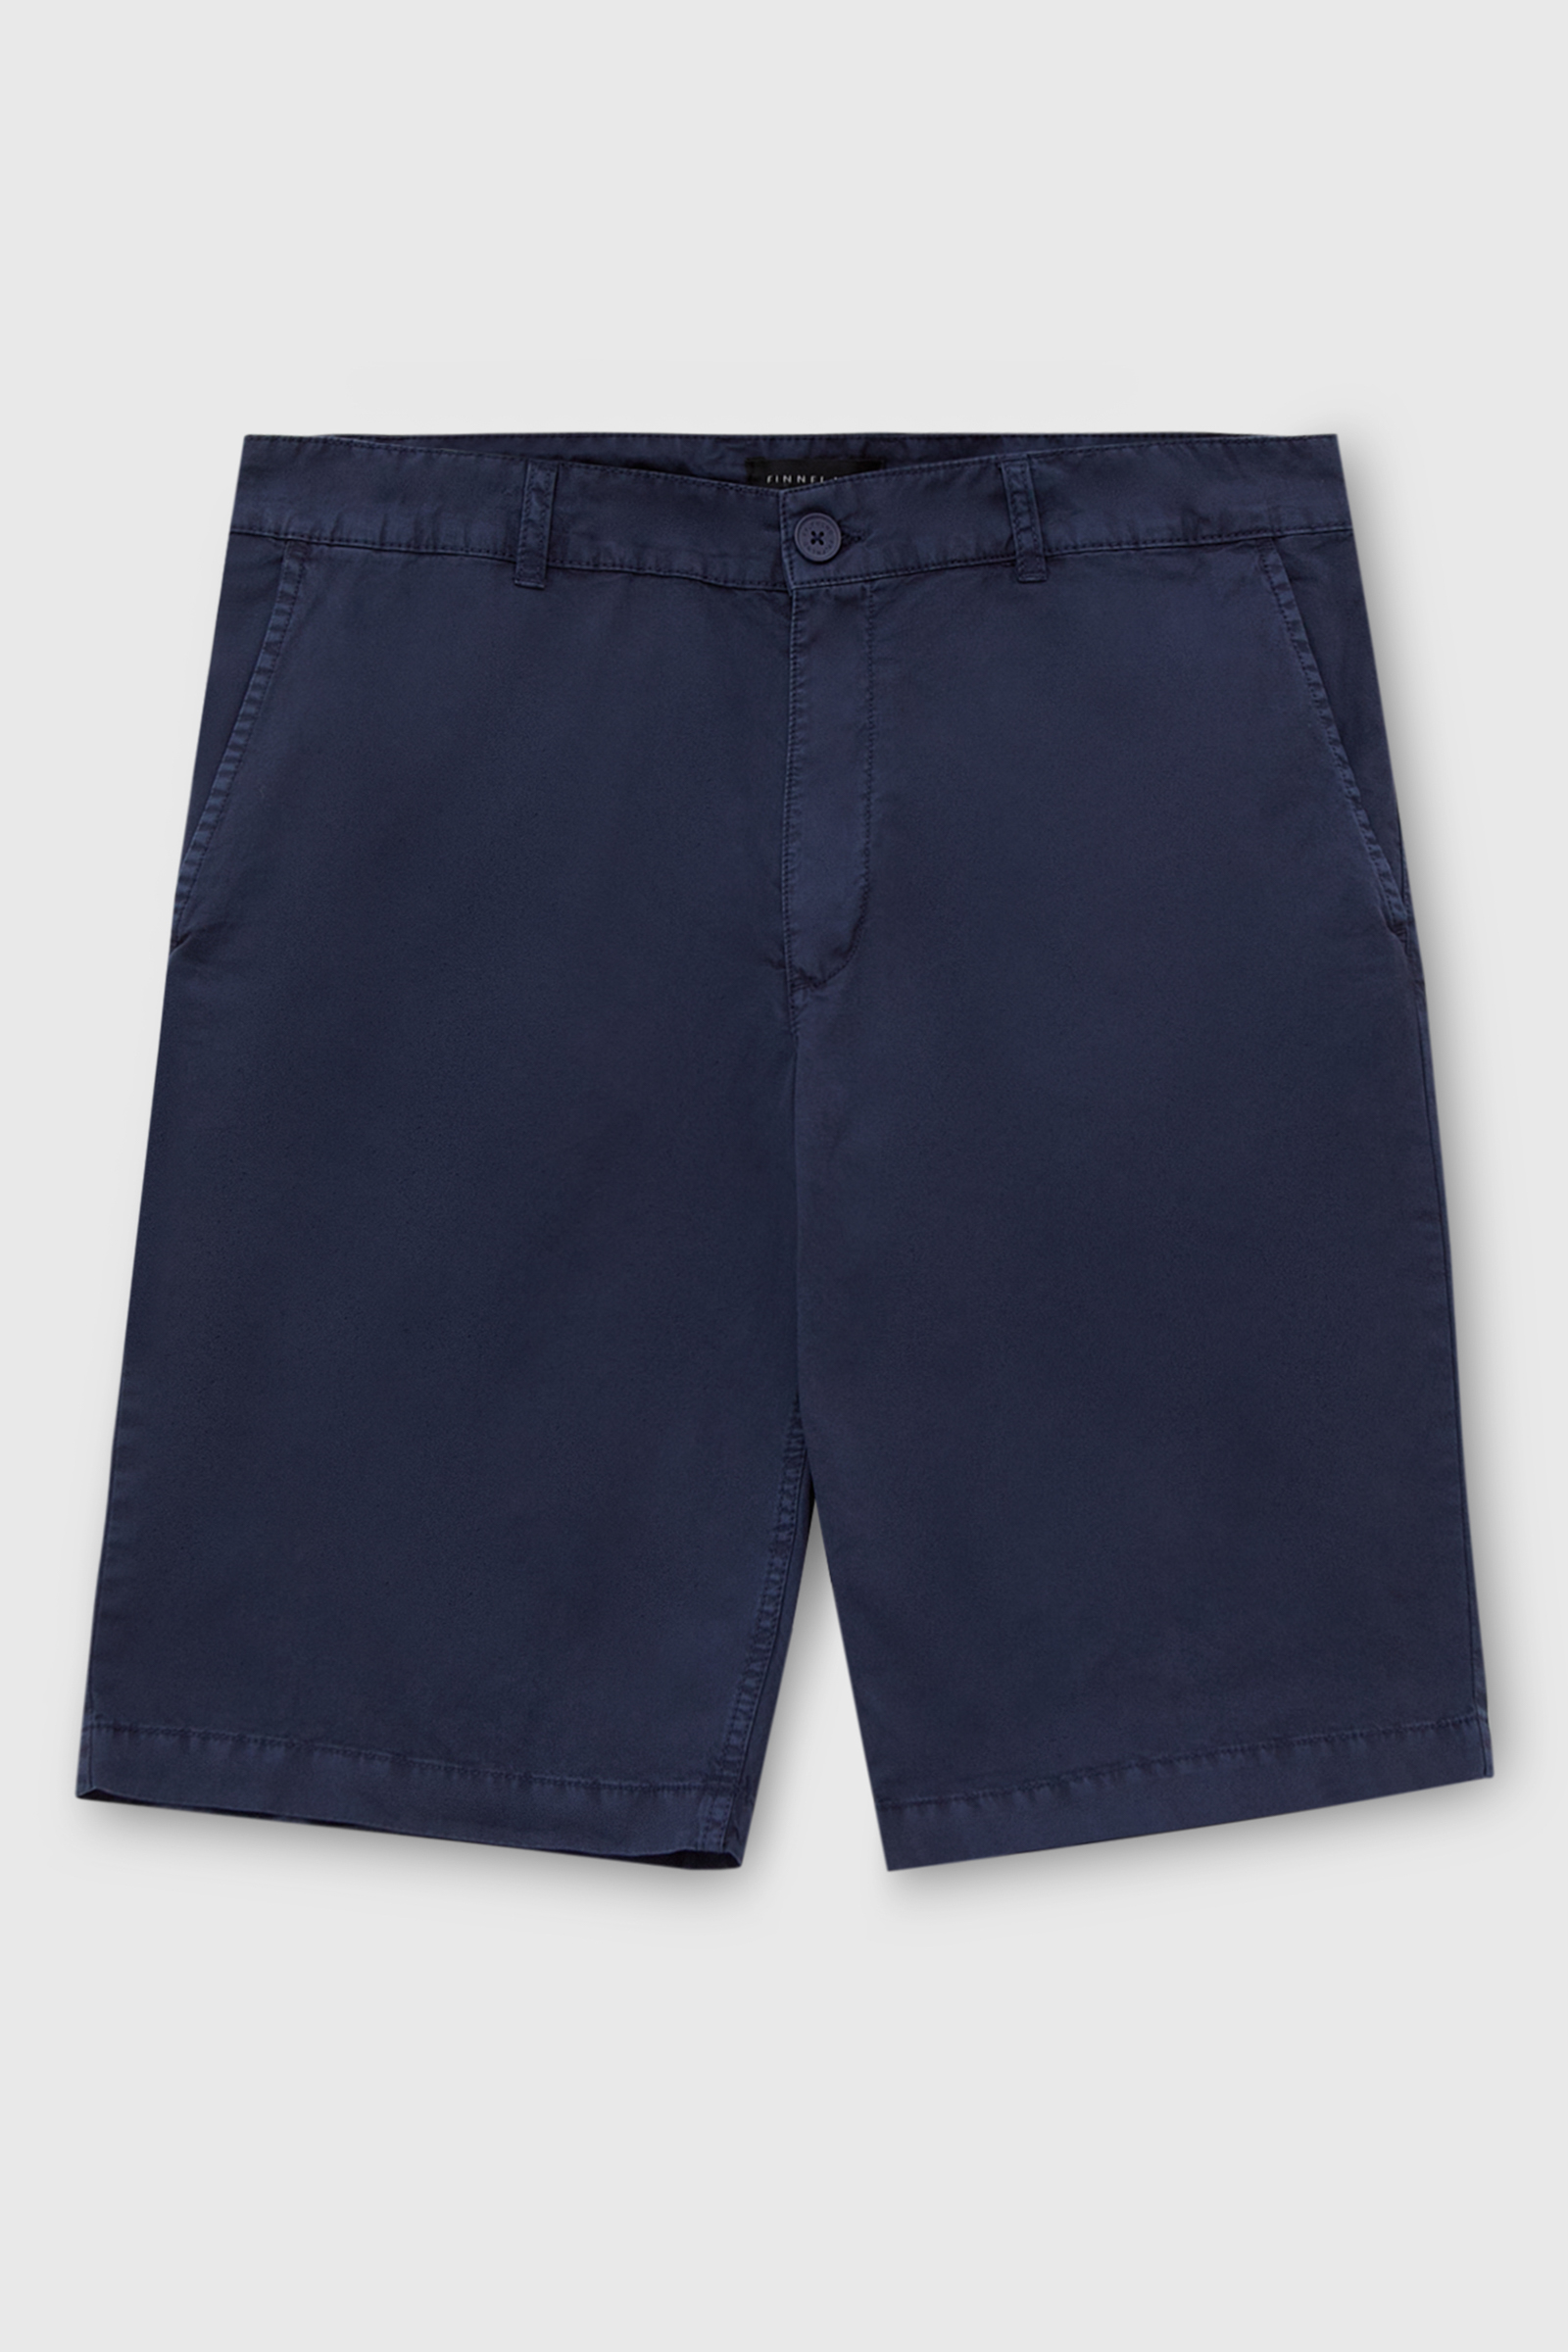 Повседневные шорты мужские Finn Flare FSC21005 синие 3XL